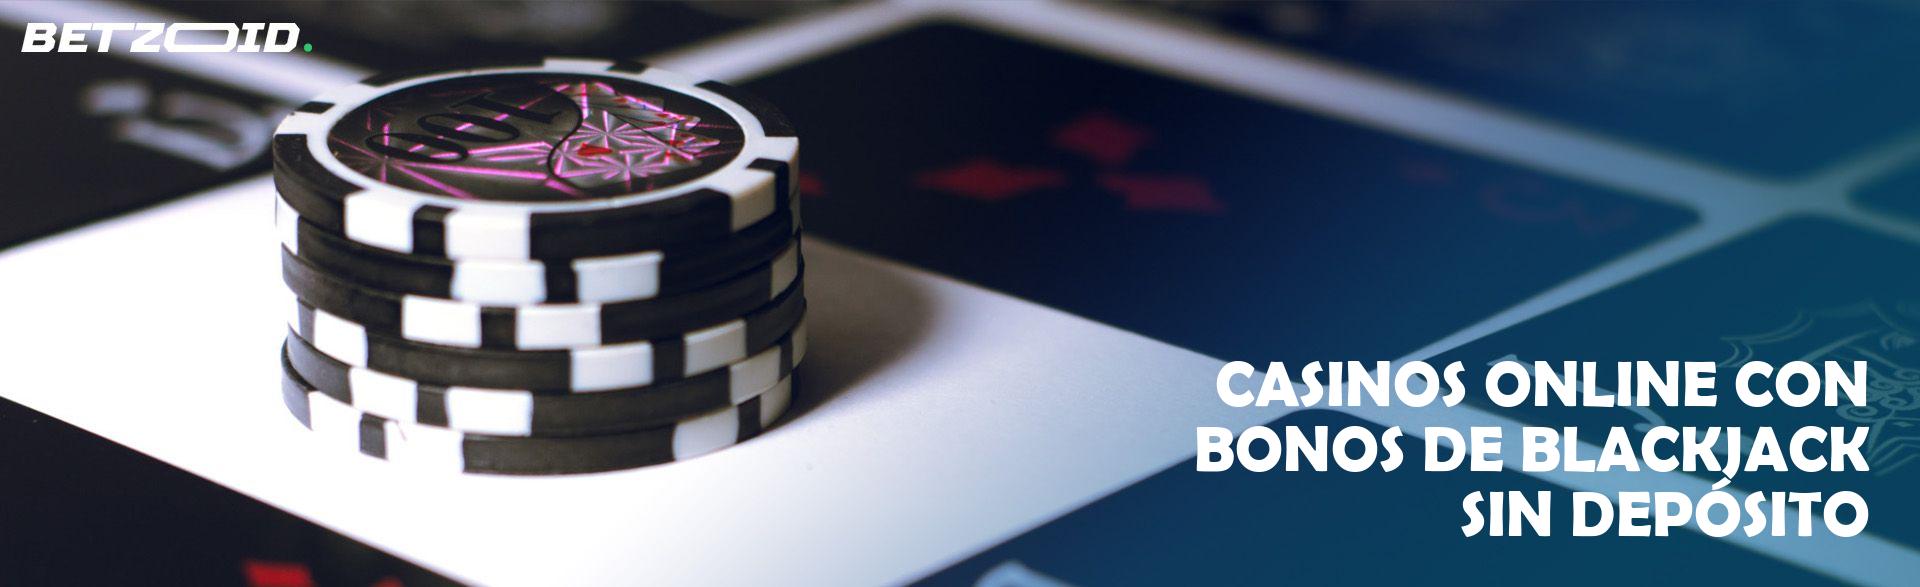 Casinos Online con Bonos de Blackjack sin Depósito.